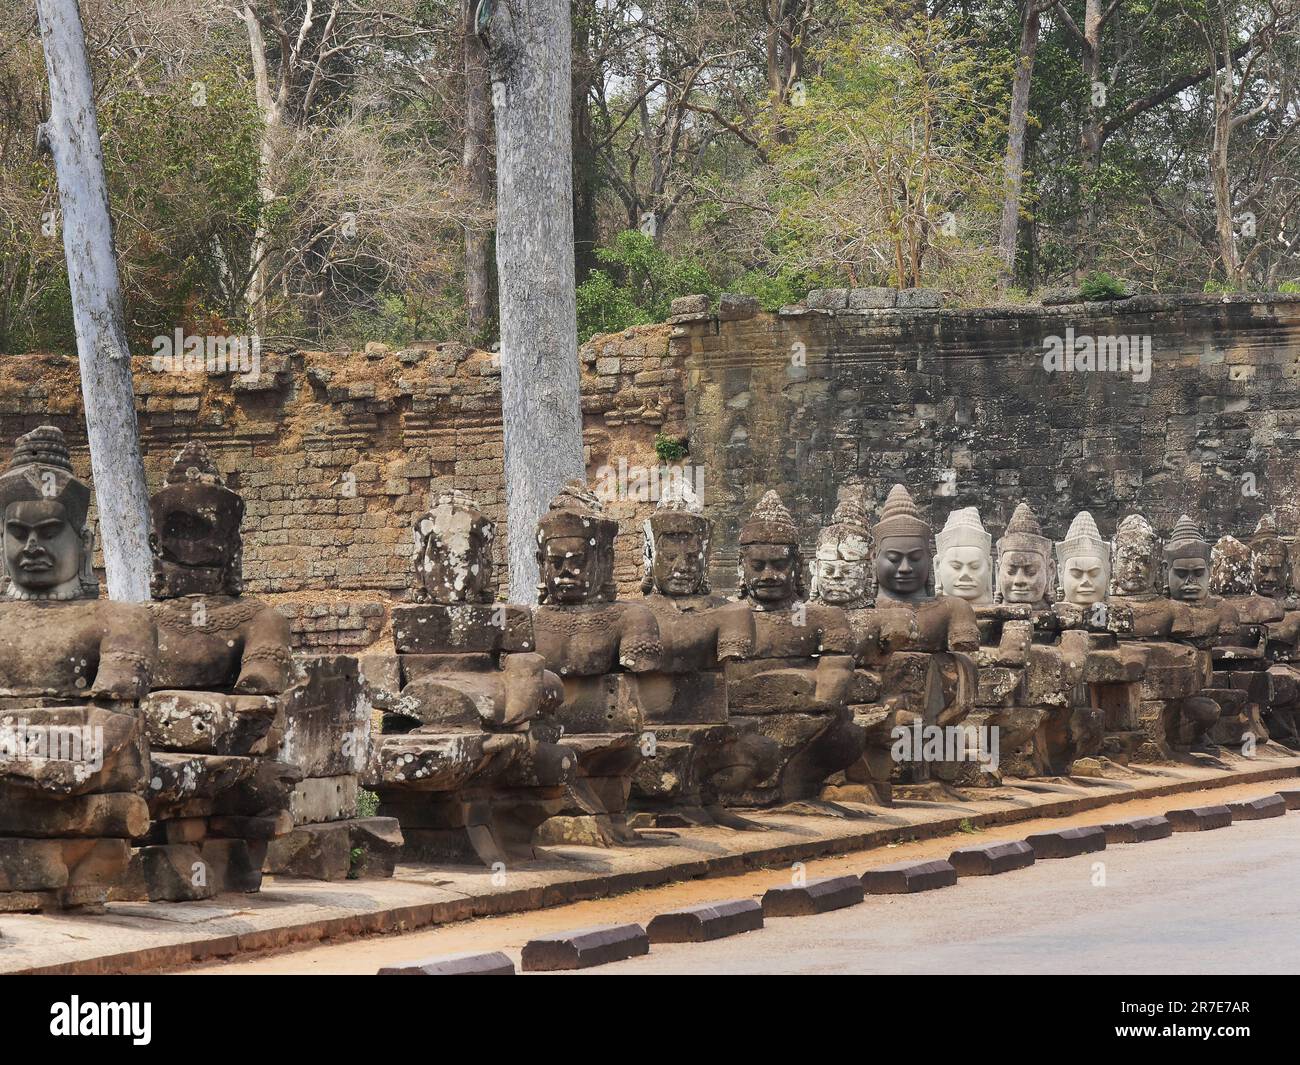 Angkor Thom Tempel, Provinz Siem Reap, Angkor's Temple Complex 1192 von der UNESCO zum Weltkulturerbe erklärt, erbaut von König Jayavarman VII. Dazwischen Stockfoto